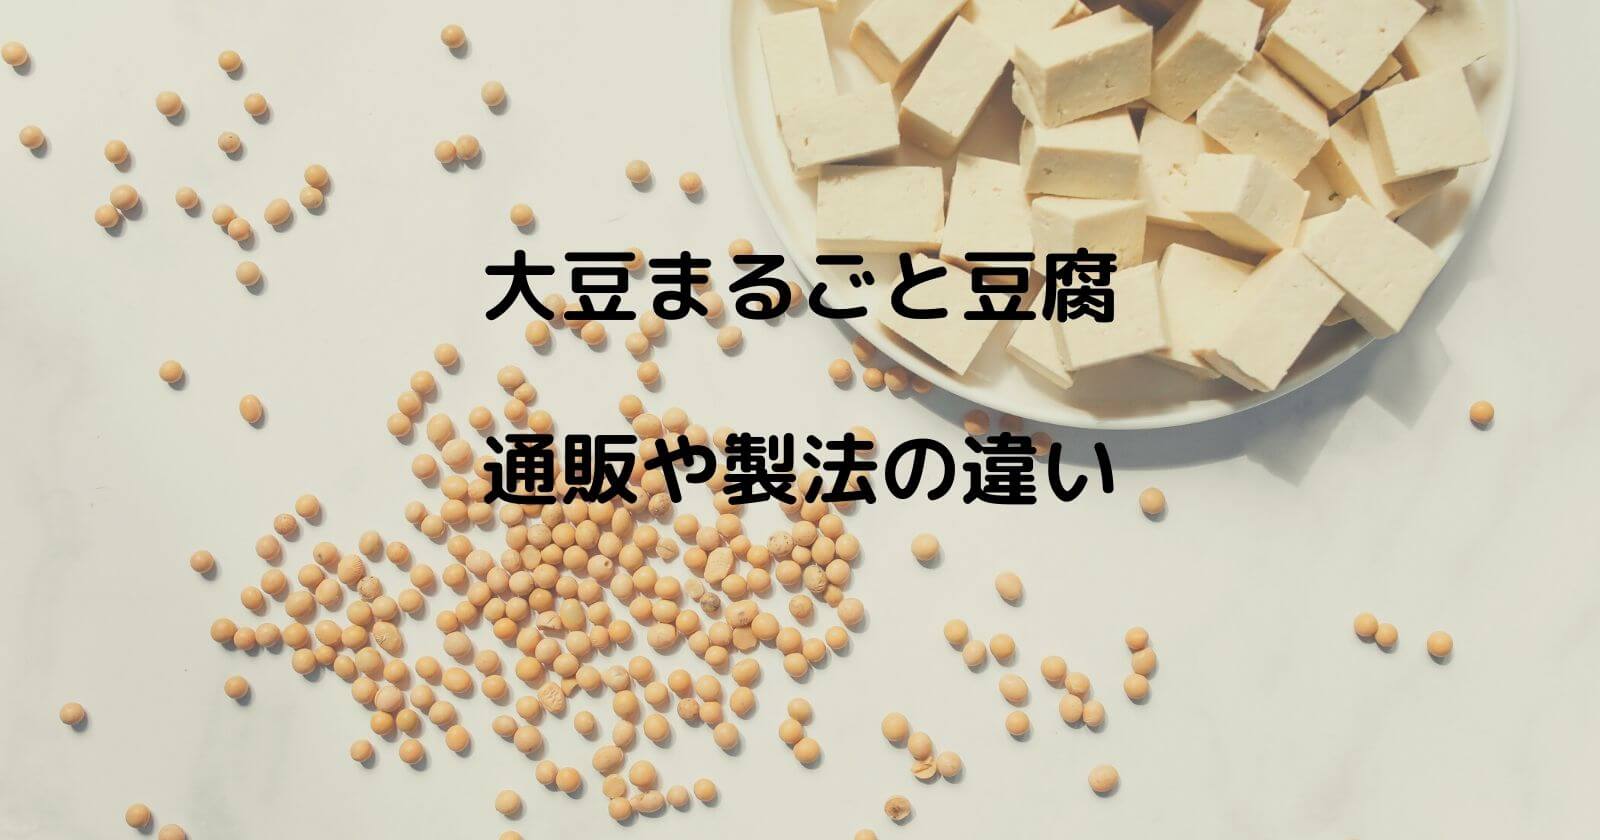 大豆まるごと豆腐の通販や製法の違い